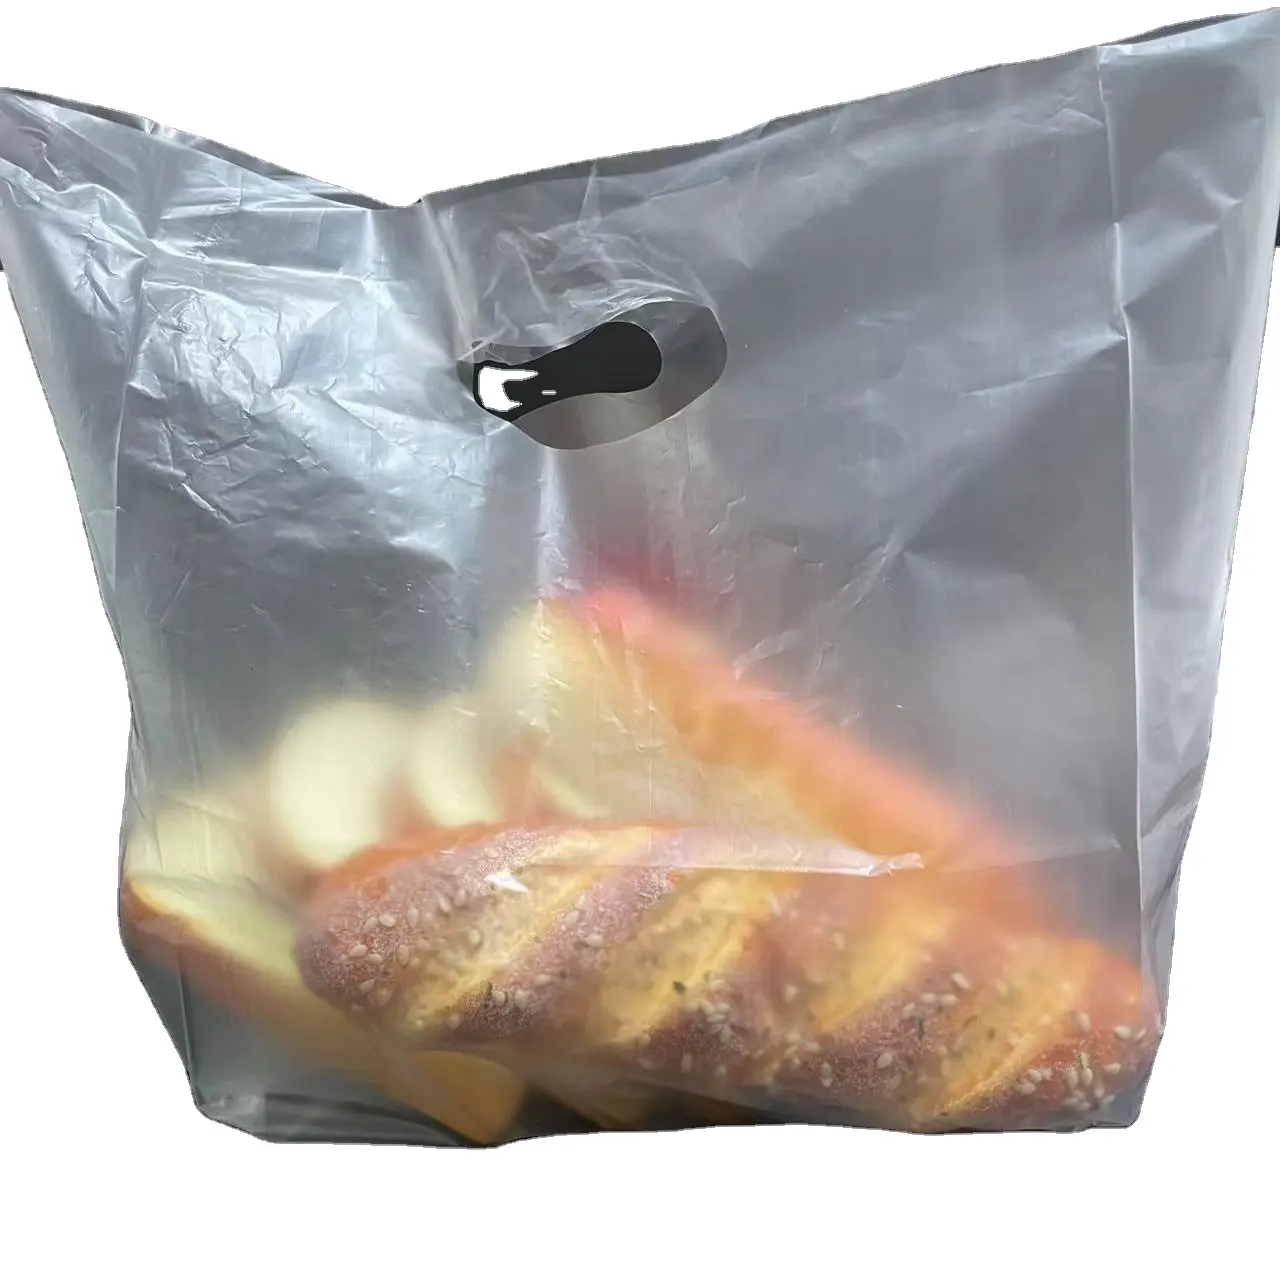 ถุงพลาสติกใส่อาหารสำหรับซื้อกลับบ้านถุงพลาสติกพิมพ์ลายโปร่งแสงออกแบบได้ตามต้องการ SP2373